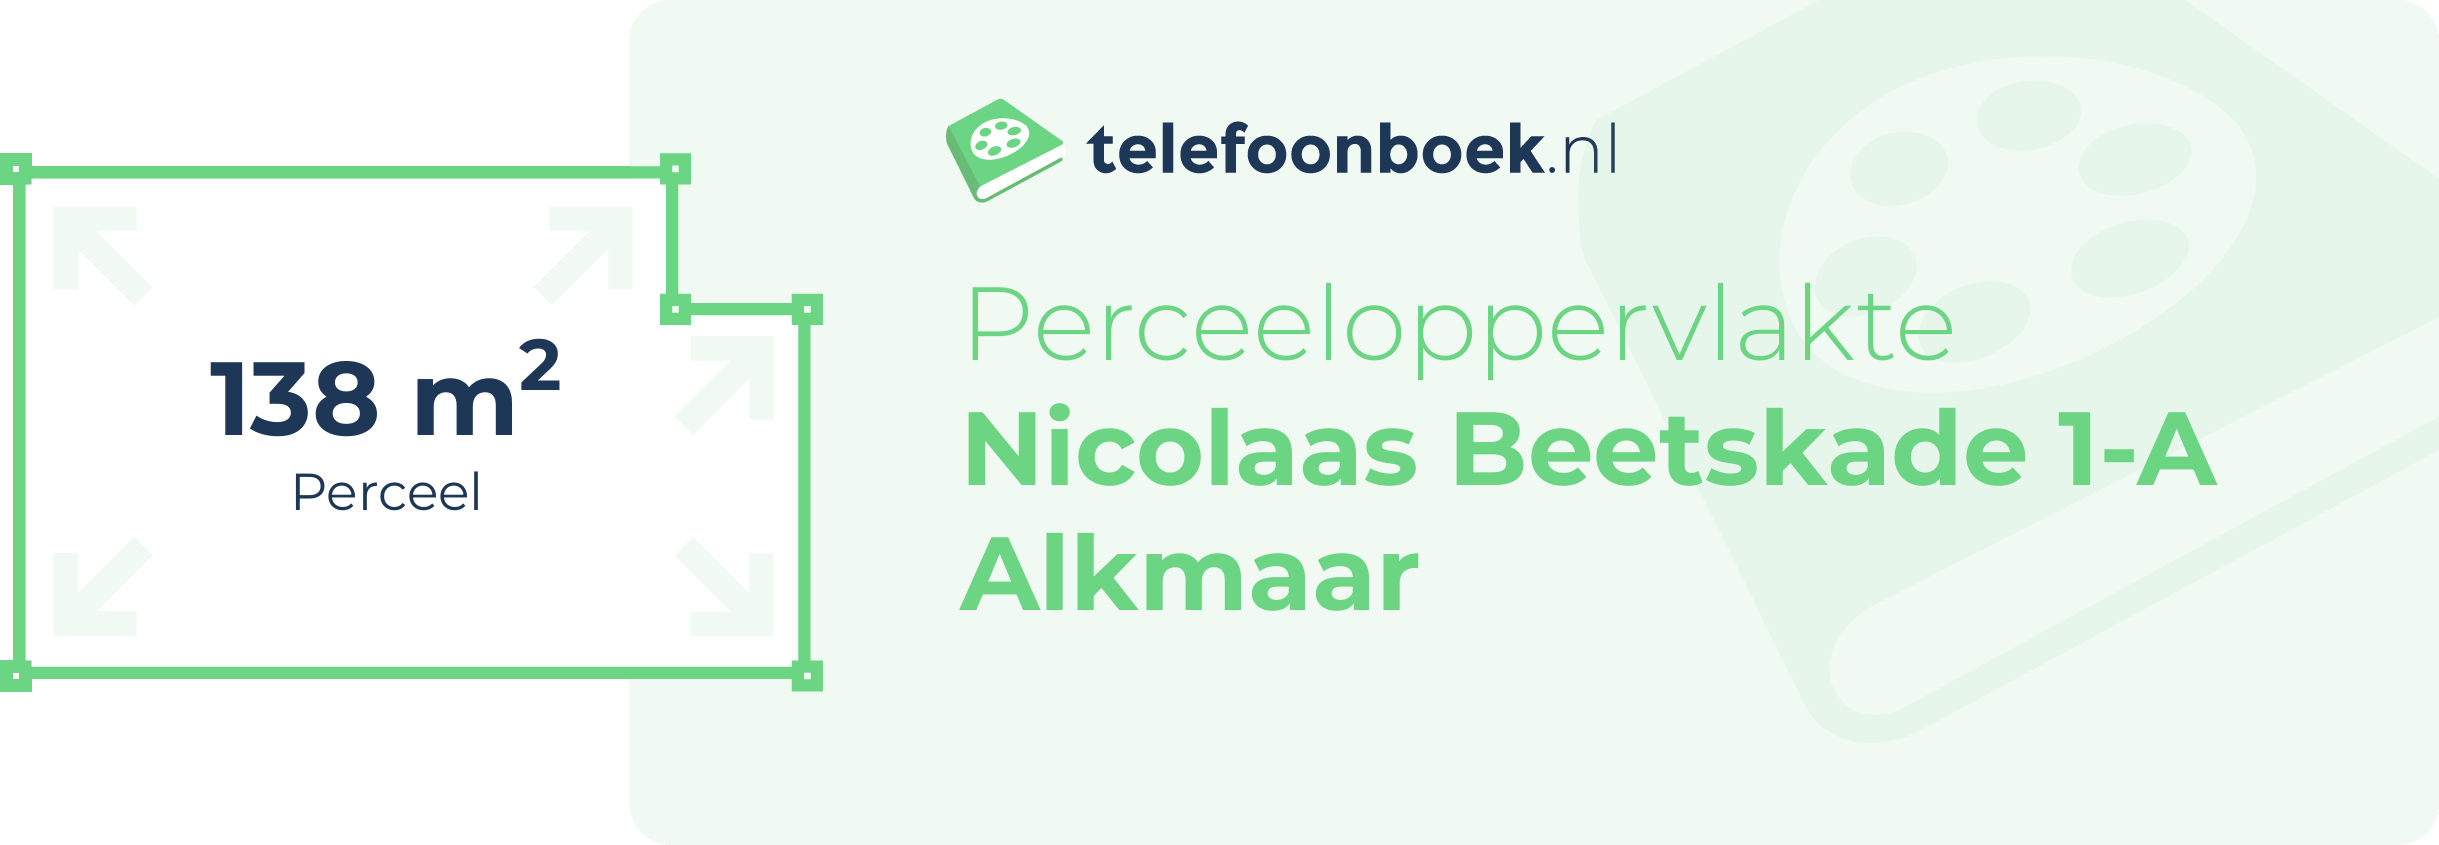 Perceeloppervlakte Nicolaas Beetskade 1-A Alkmaar